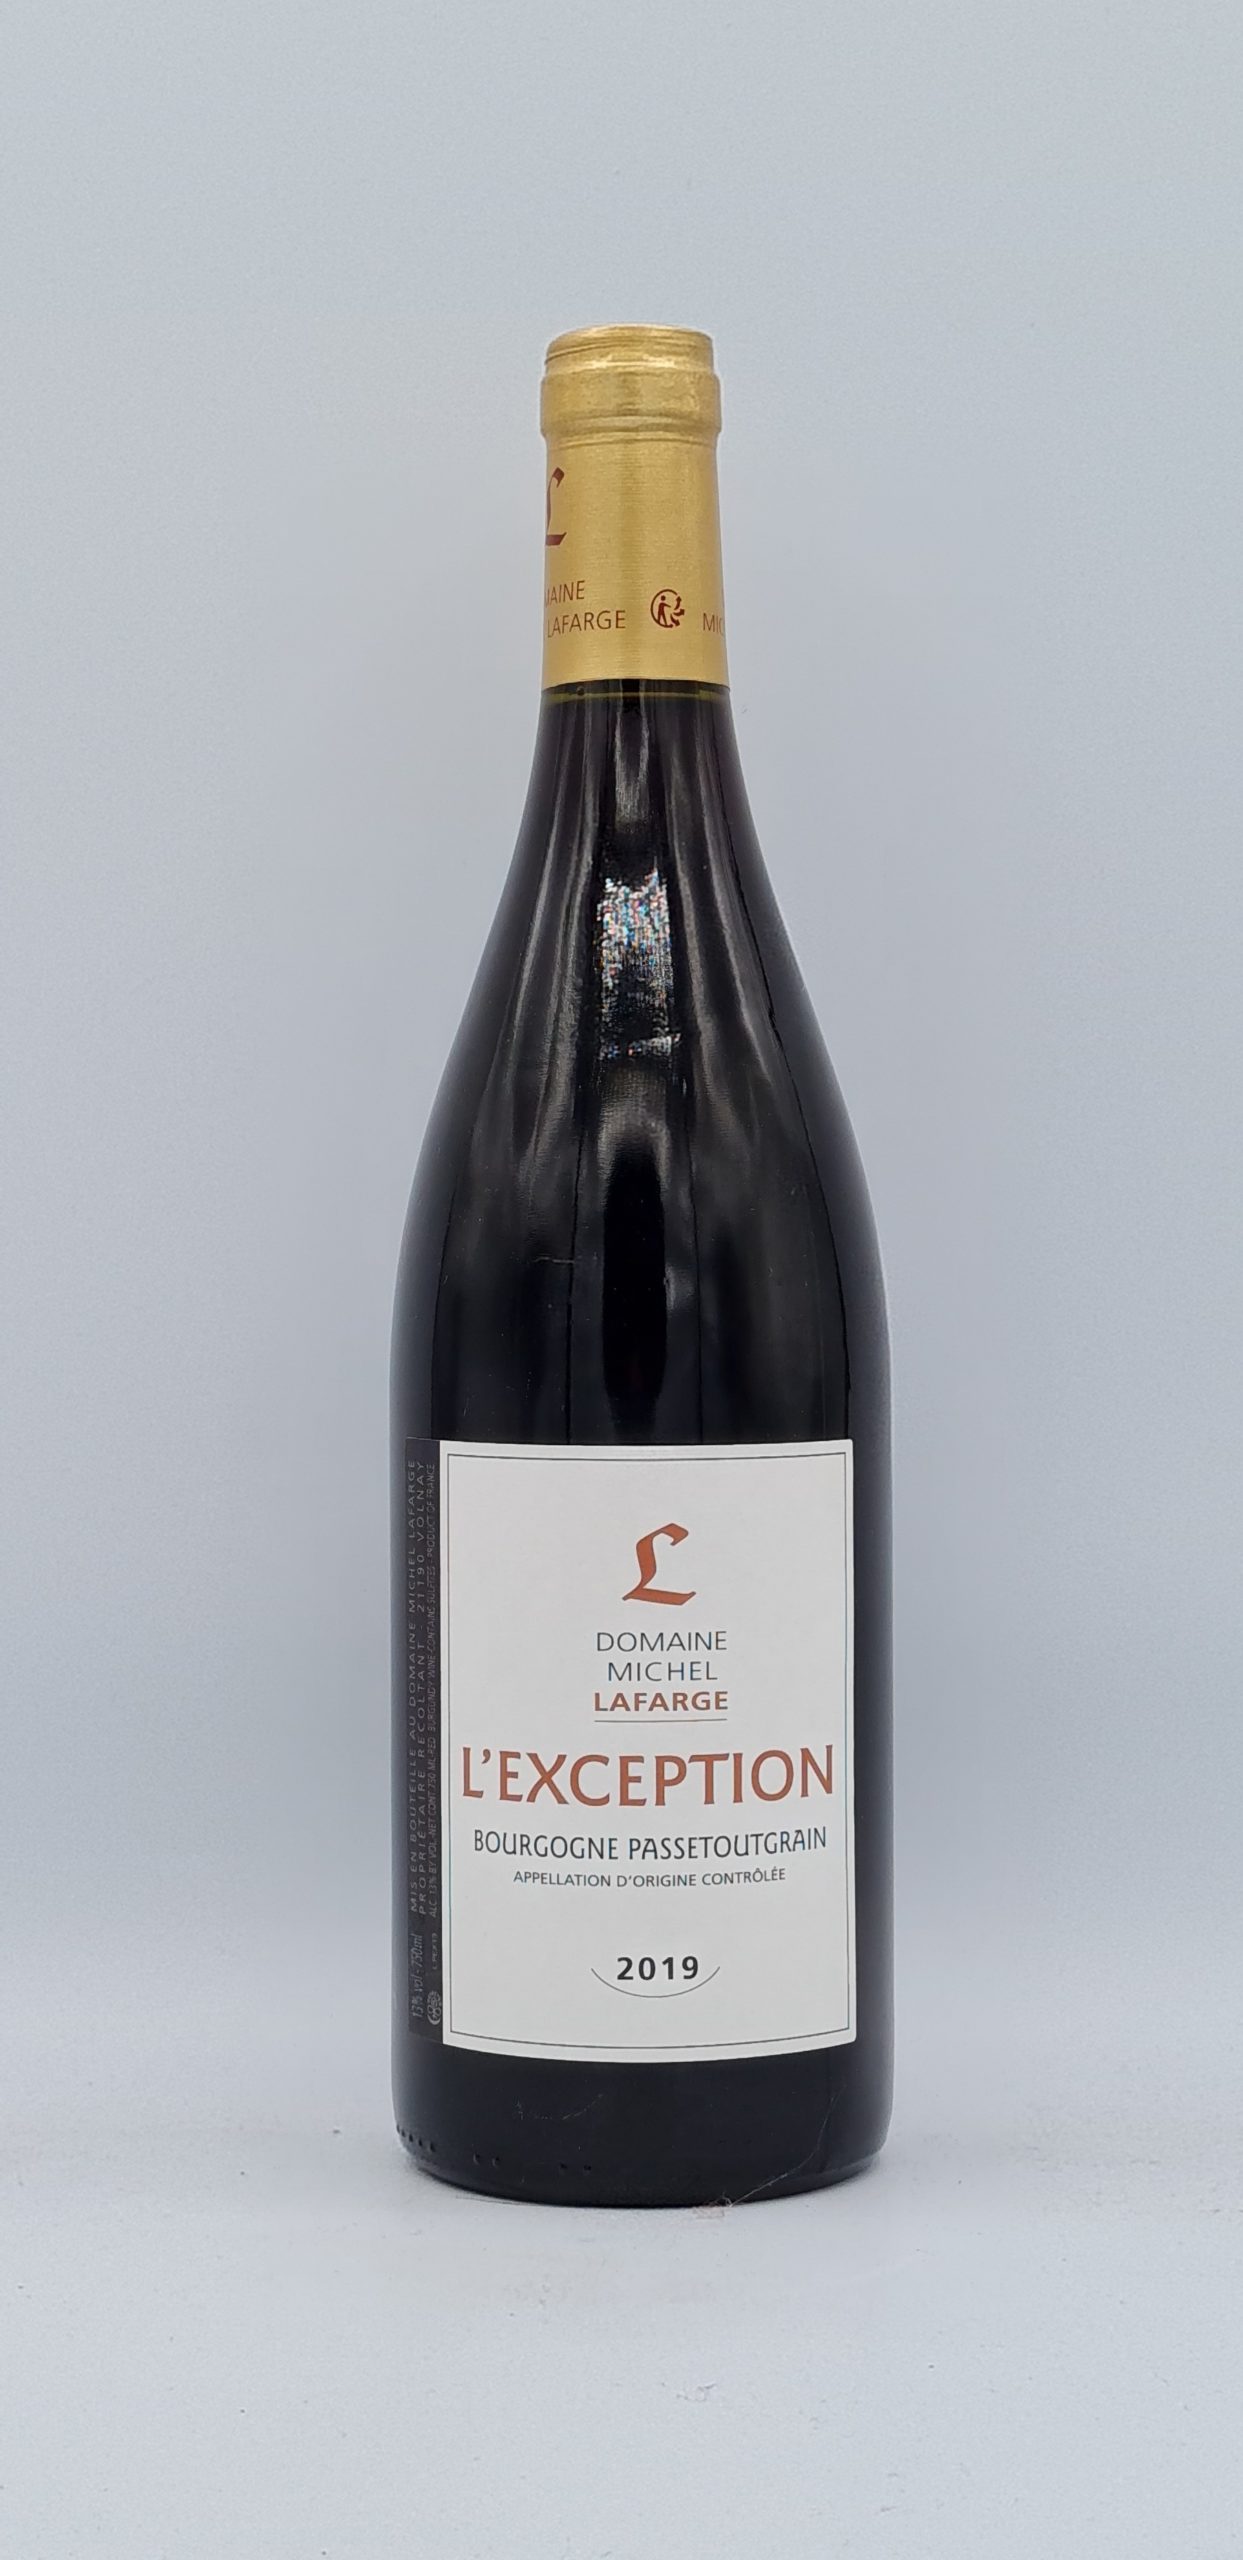 Bourgogne Passetoutgrain “L’exception” 2019 Domaine Lafarge